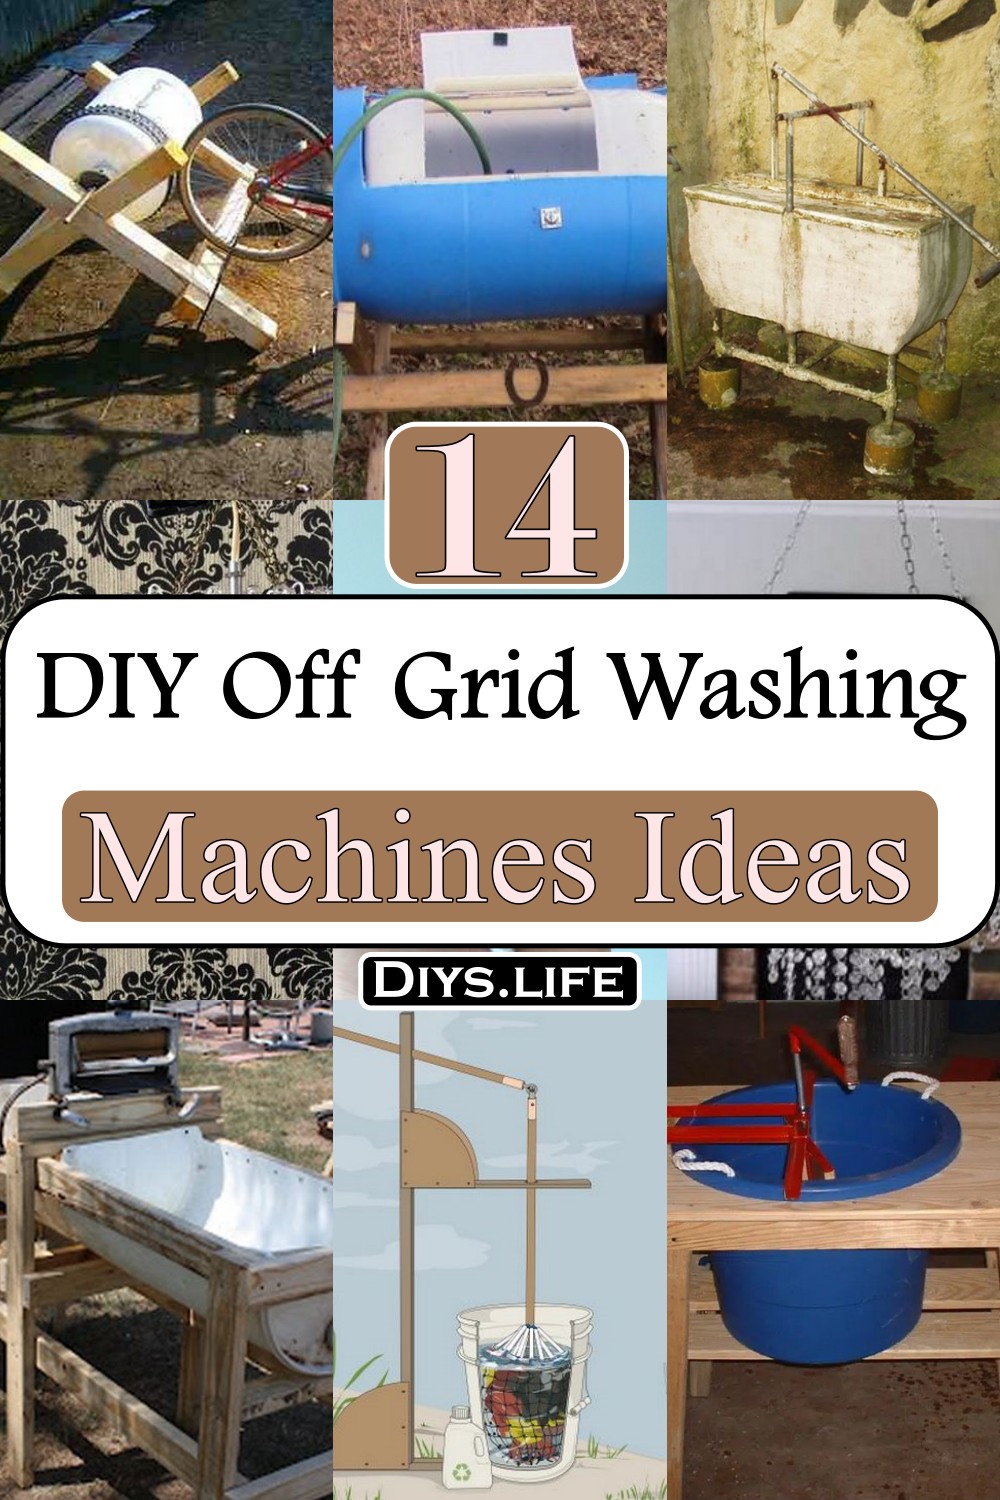 DIY Off Grid Washing Machines Ideas